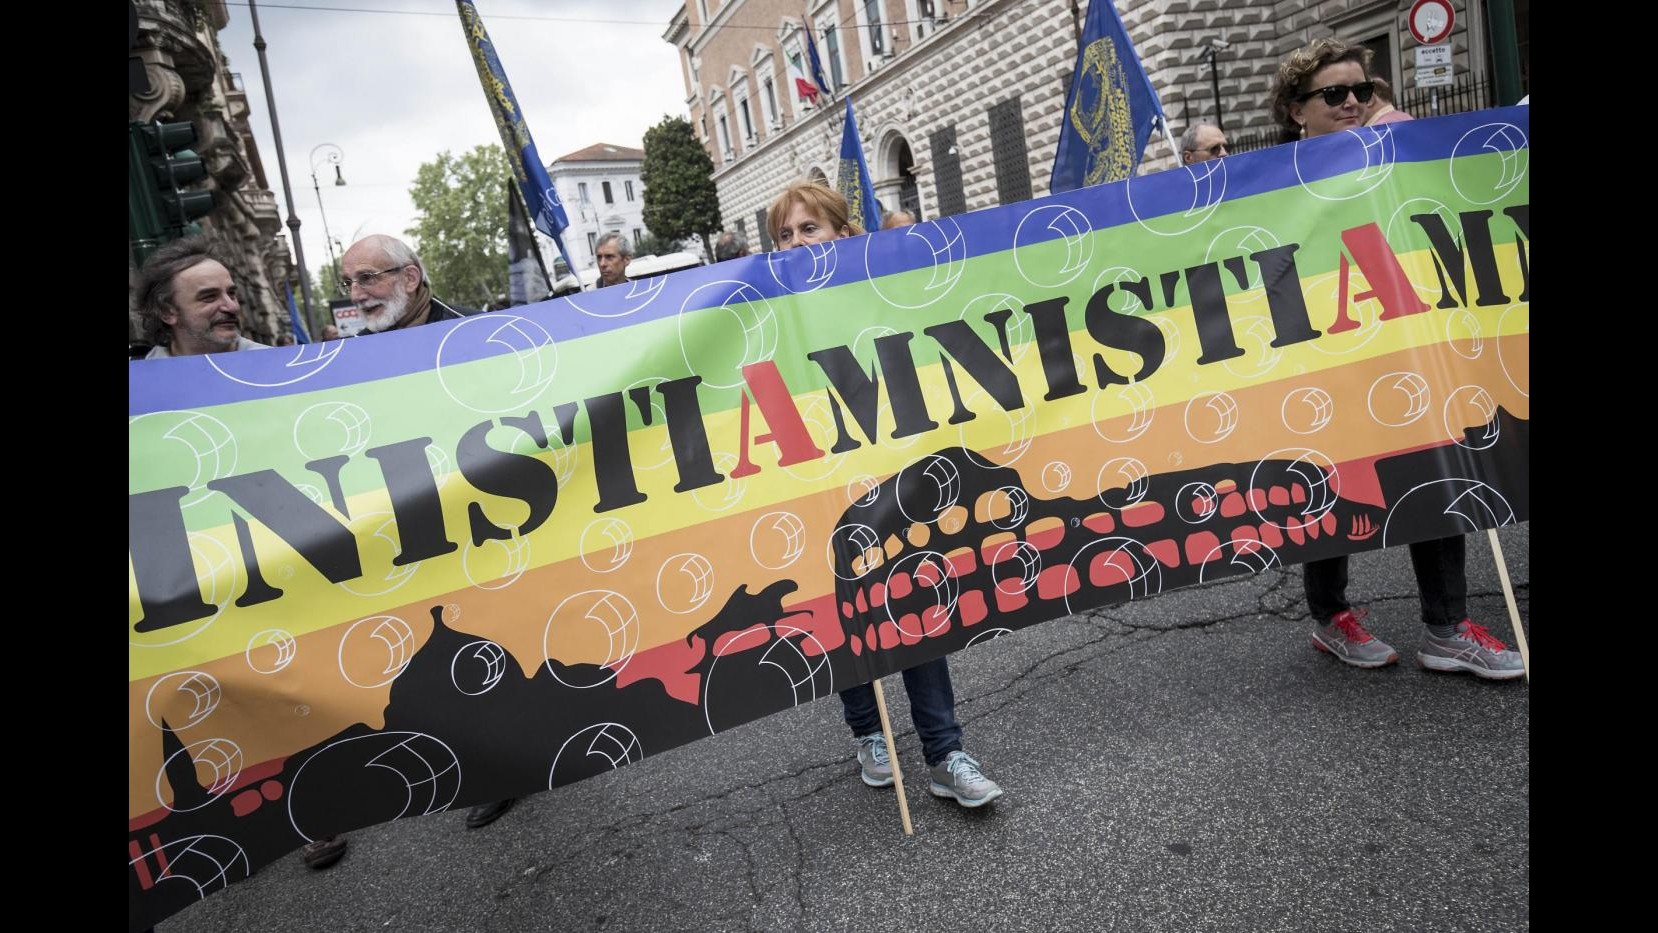 FOTO Marcia per l’amnistia dal Partito Radicale a Roma